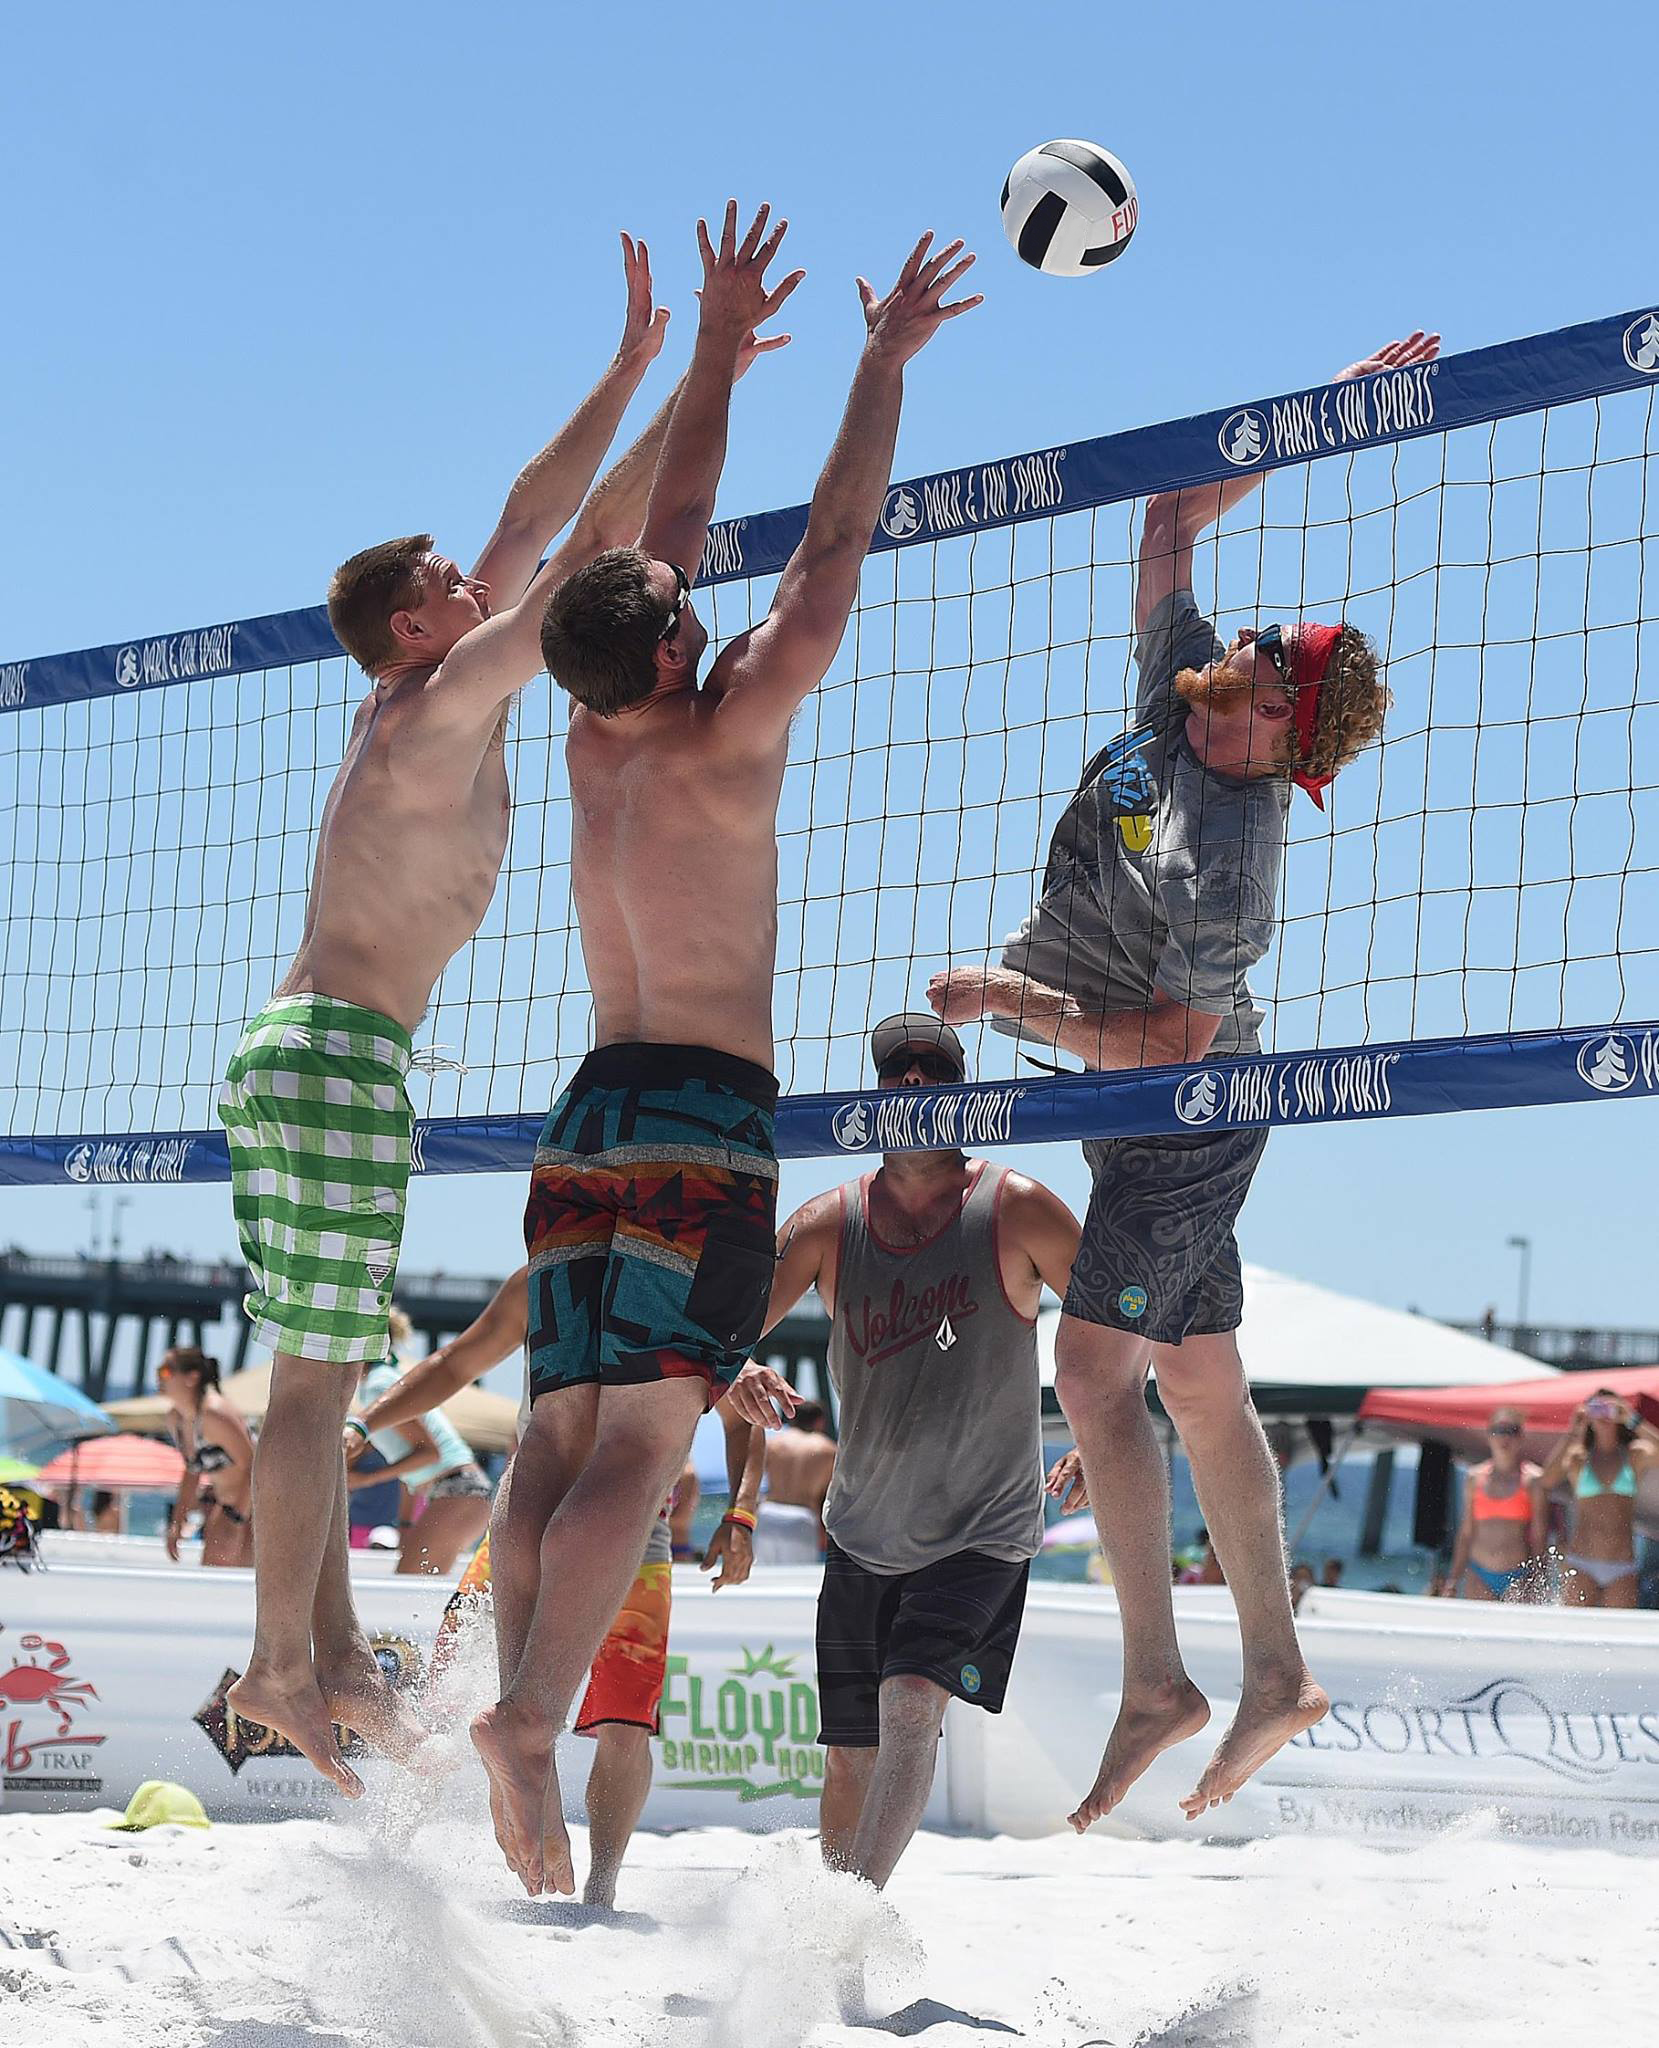 Volleyball Set Official Size Net Ball Poles Outdoor Team Sports Beach Park Games